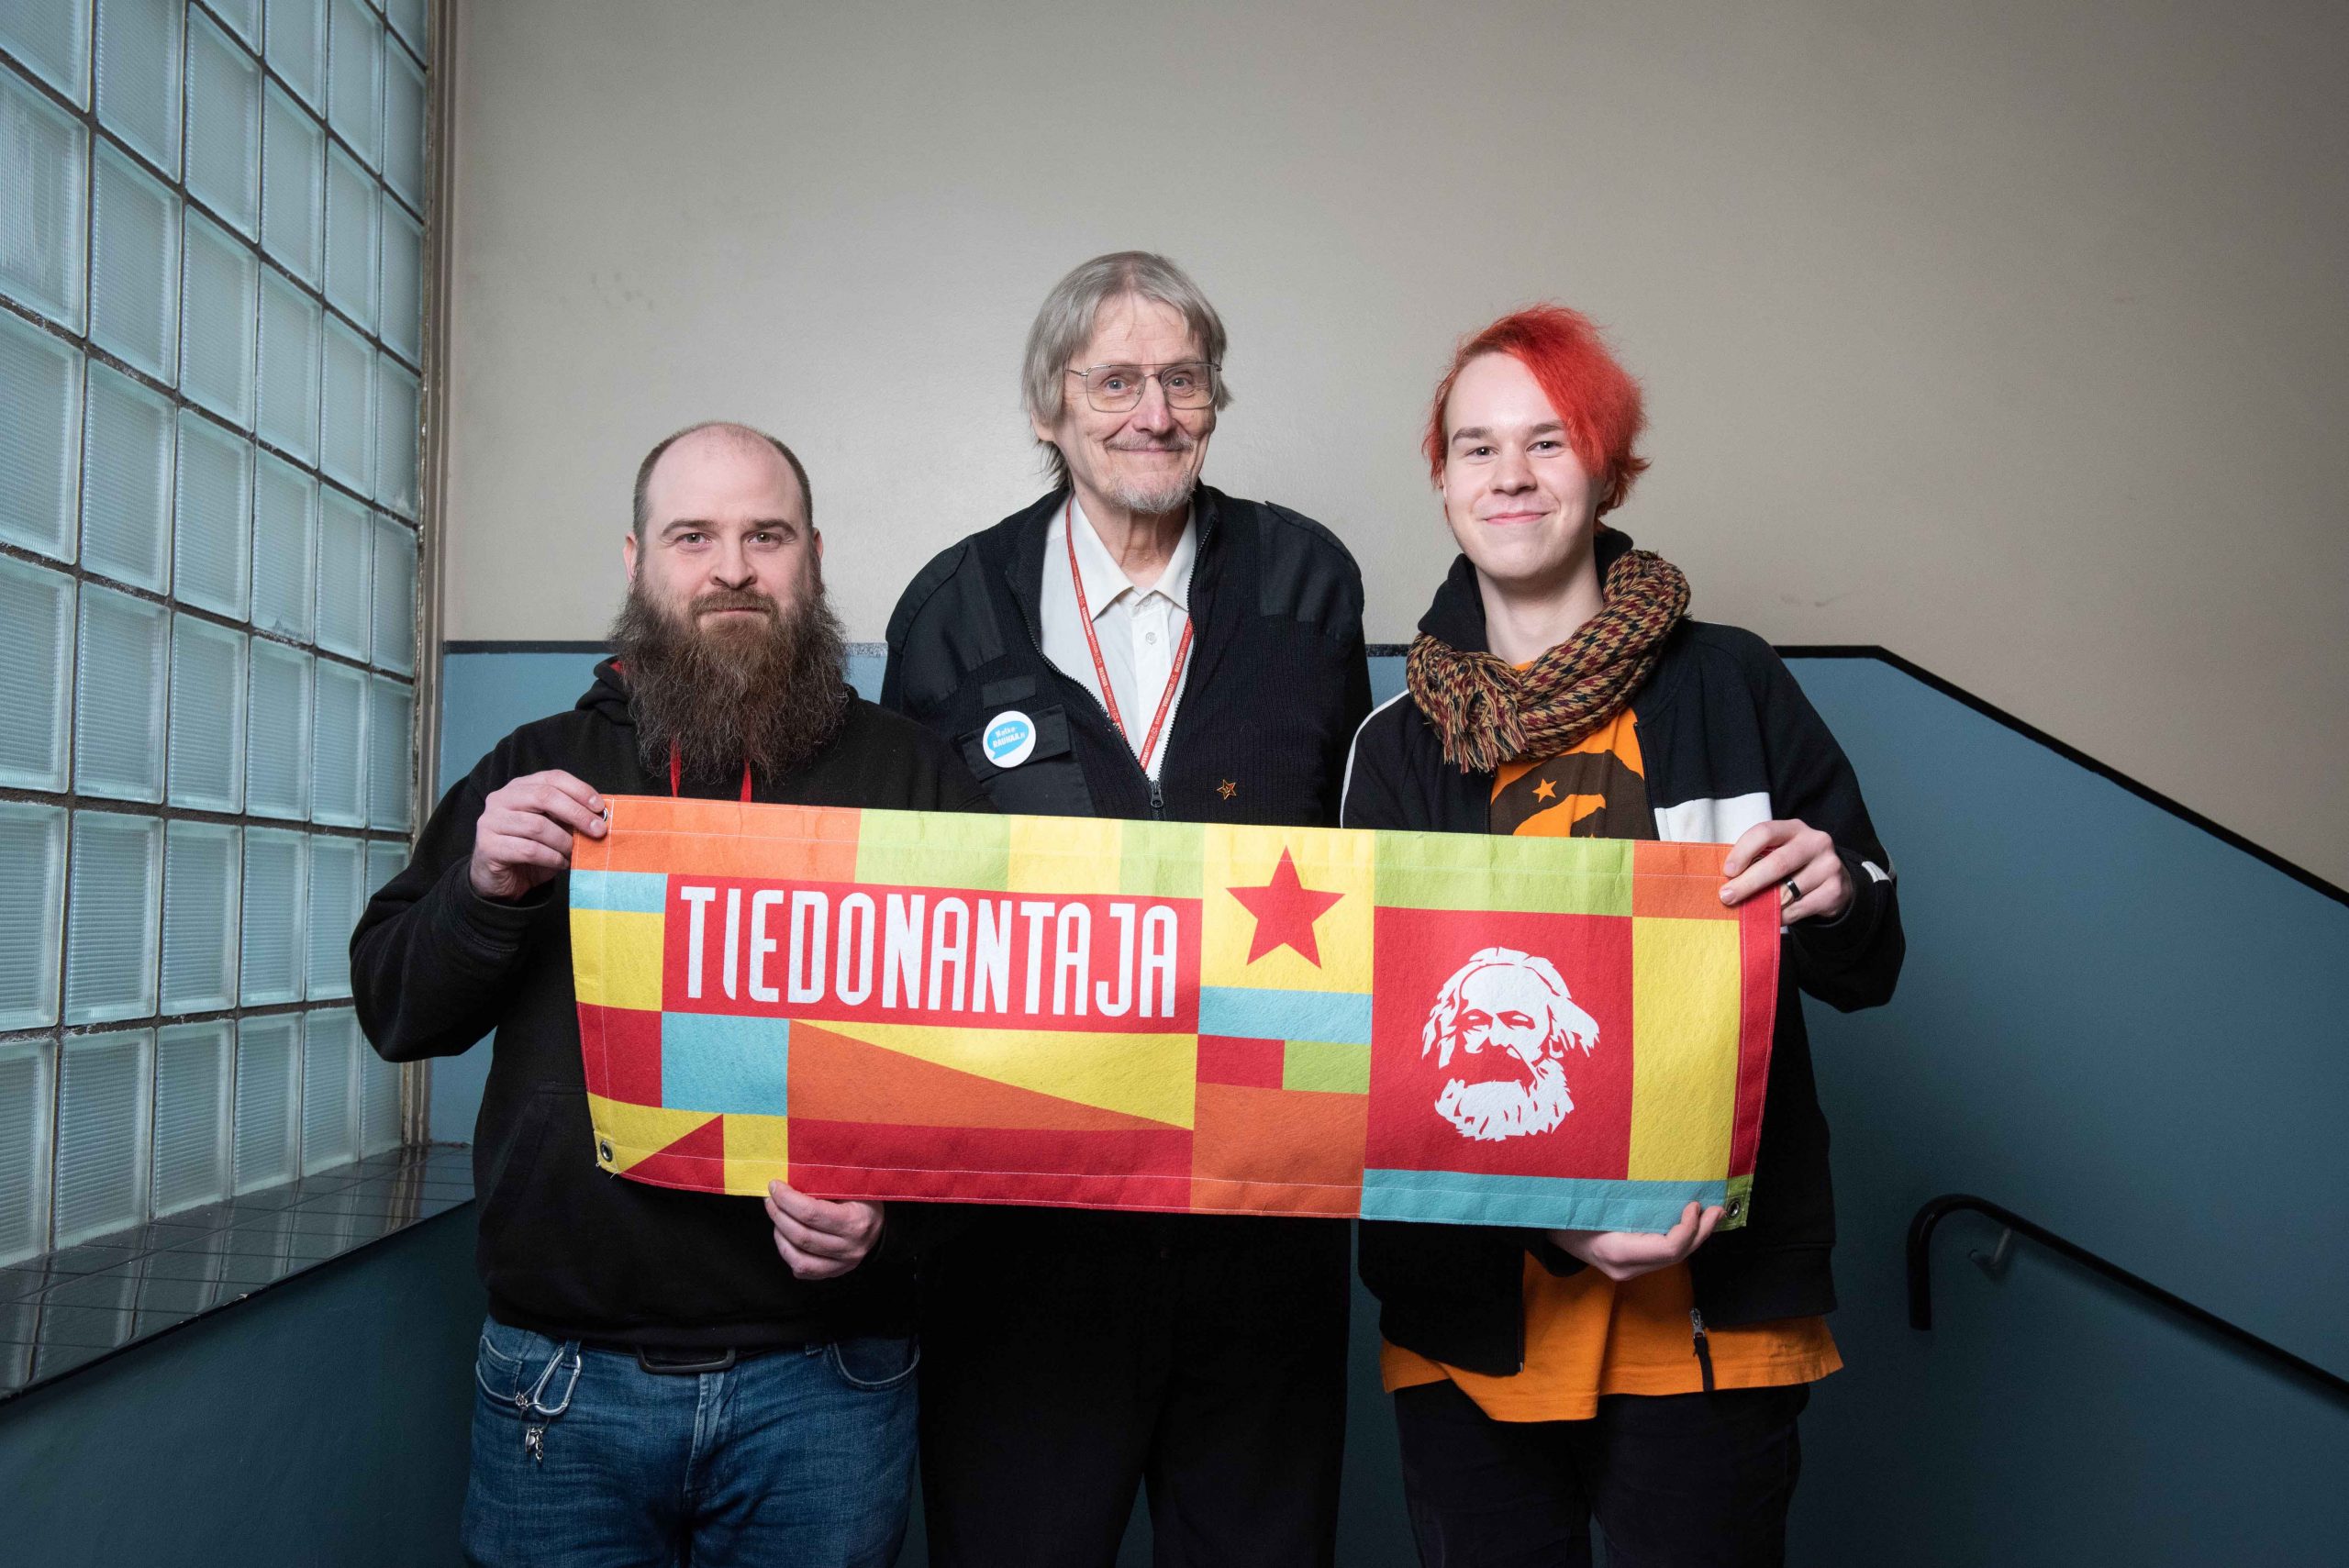 Kolme kommunistia kuvattuna Tiedonantaja-banderollin kanssa.